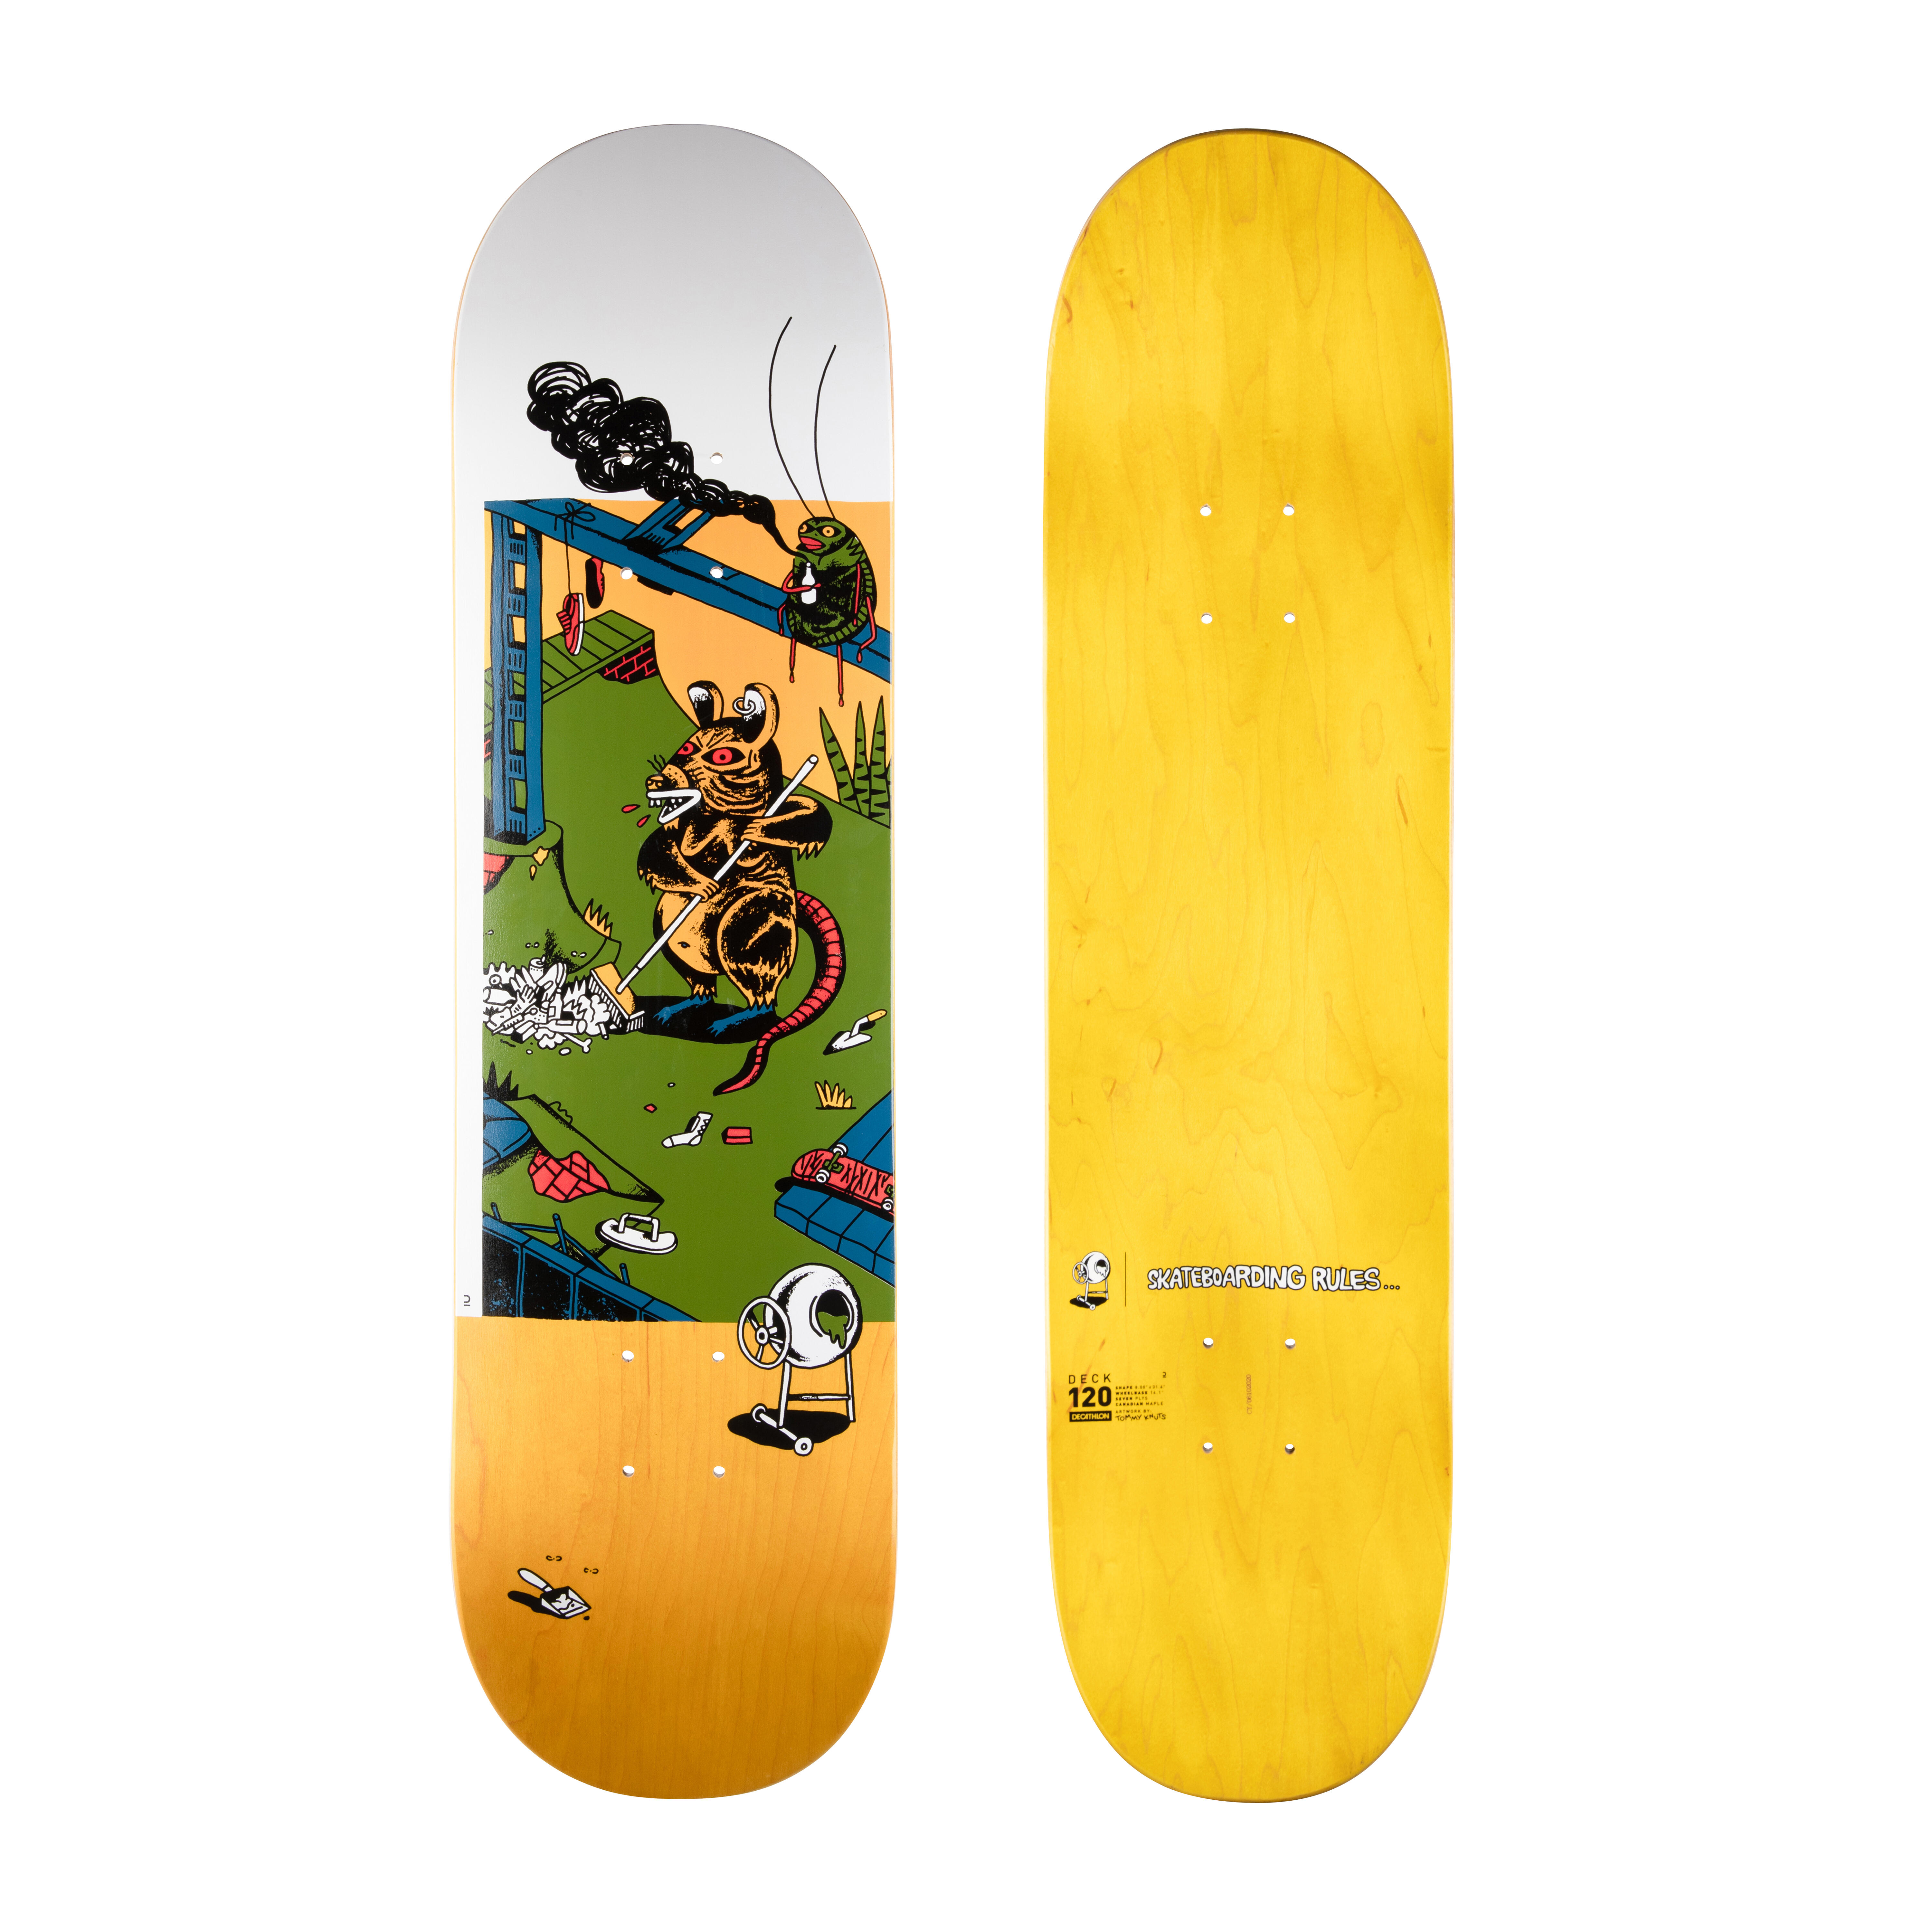 Placă skateboard DK120 KNUTS – SKATEBOARDING RULES 8″ La Oferta Online decathlon imagine La Oferta Online